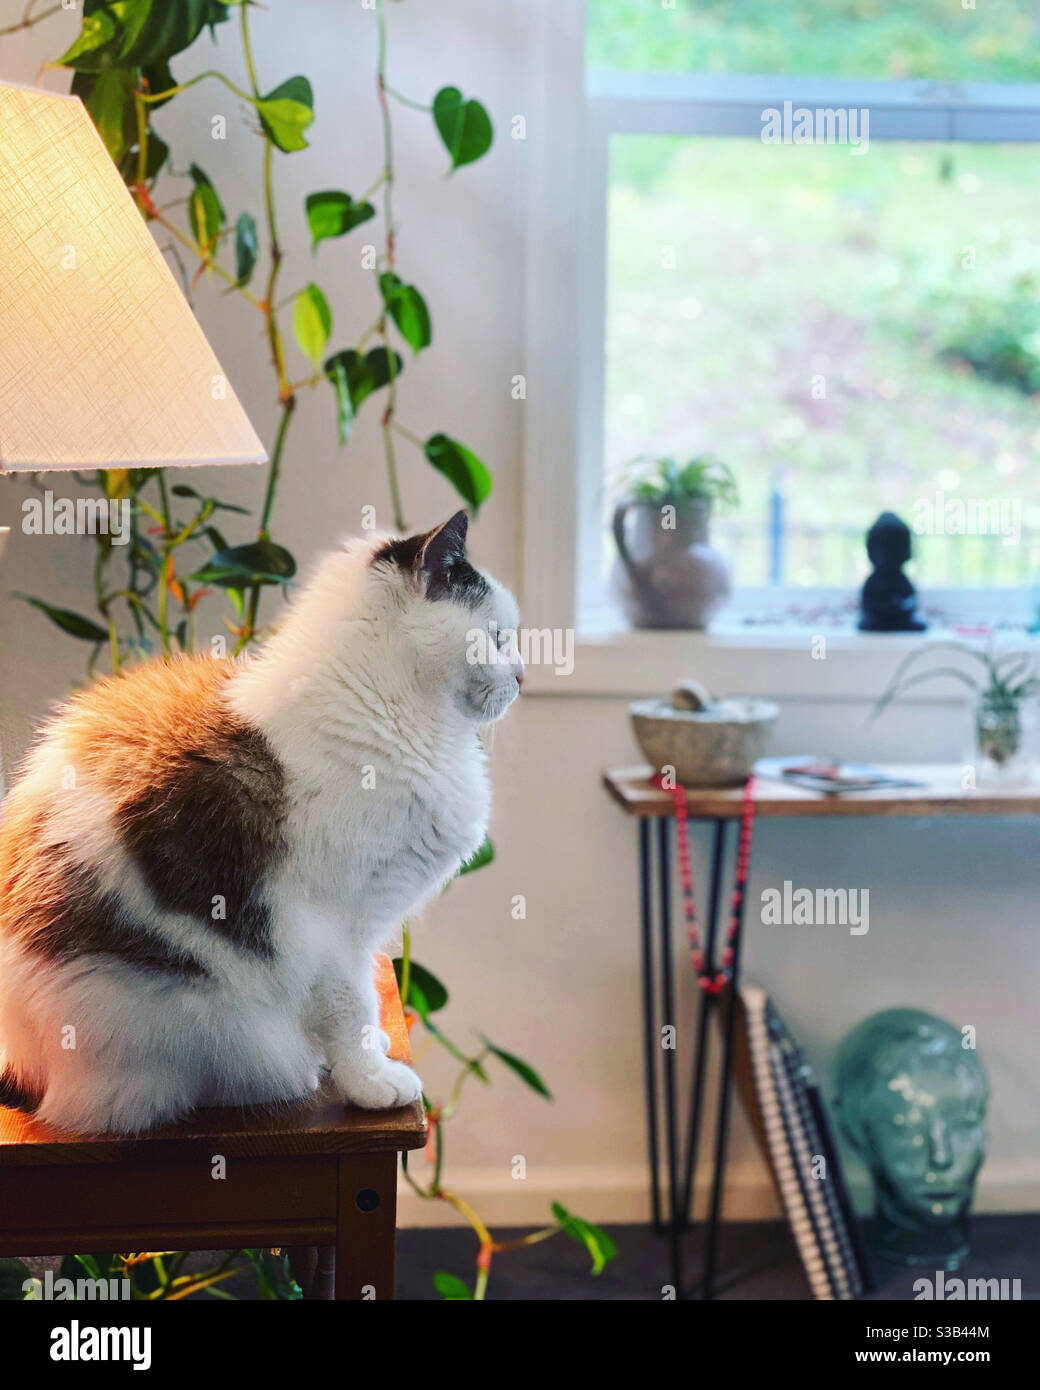 Eine Katze, die neben einer Lampe in einem modernen, luftigen Raum mit Pflanzen sitzt. Stockfoto